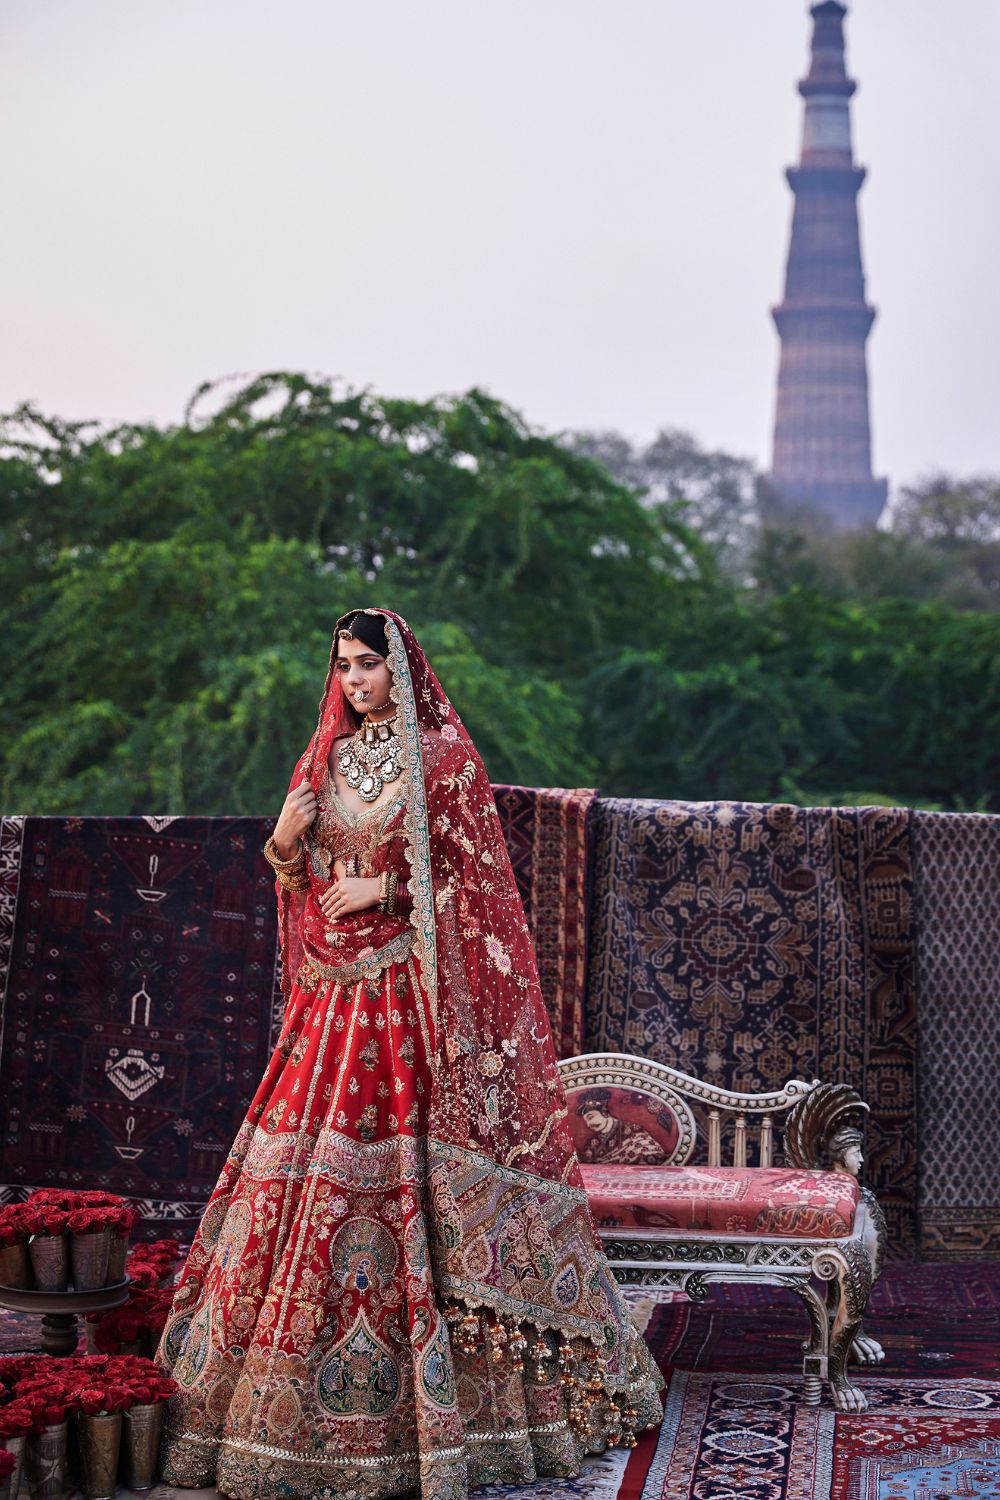 Best 30 Designer Indian Bridal Lehengas Designs of 2016 - Zikimo.com -  Original Indian Bridal Lehengas Collection